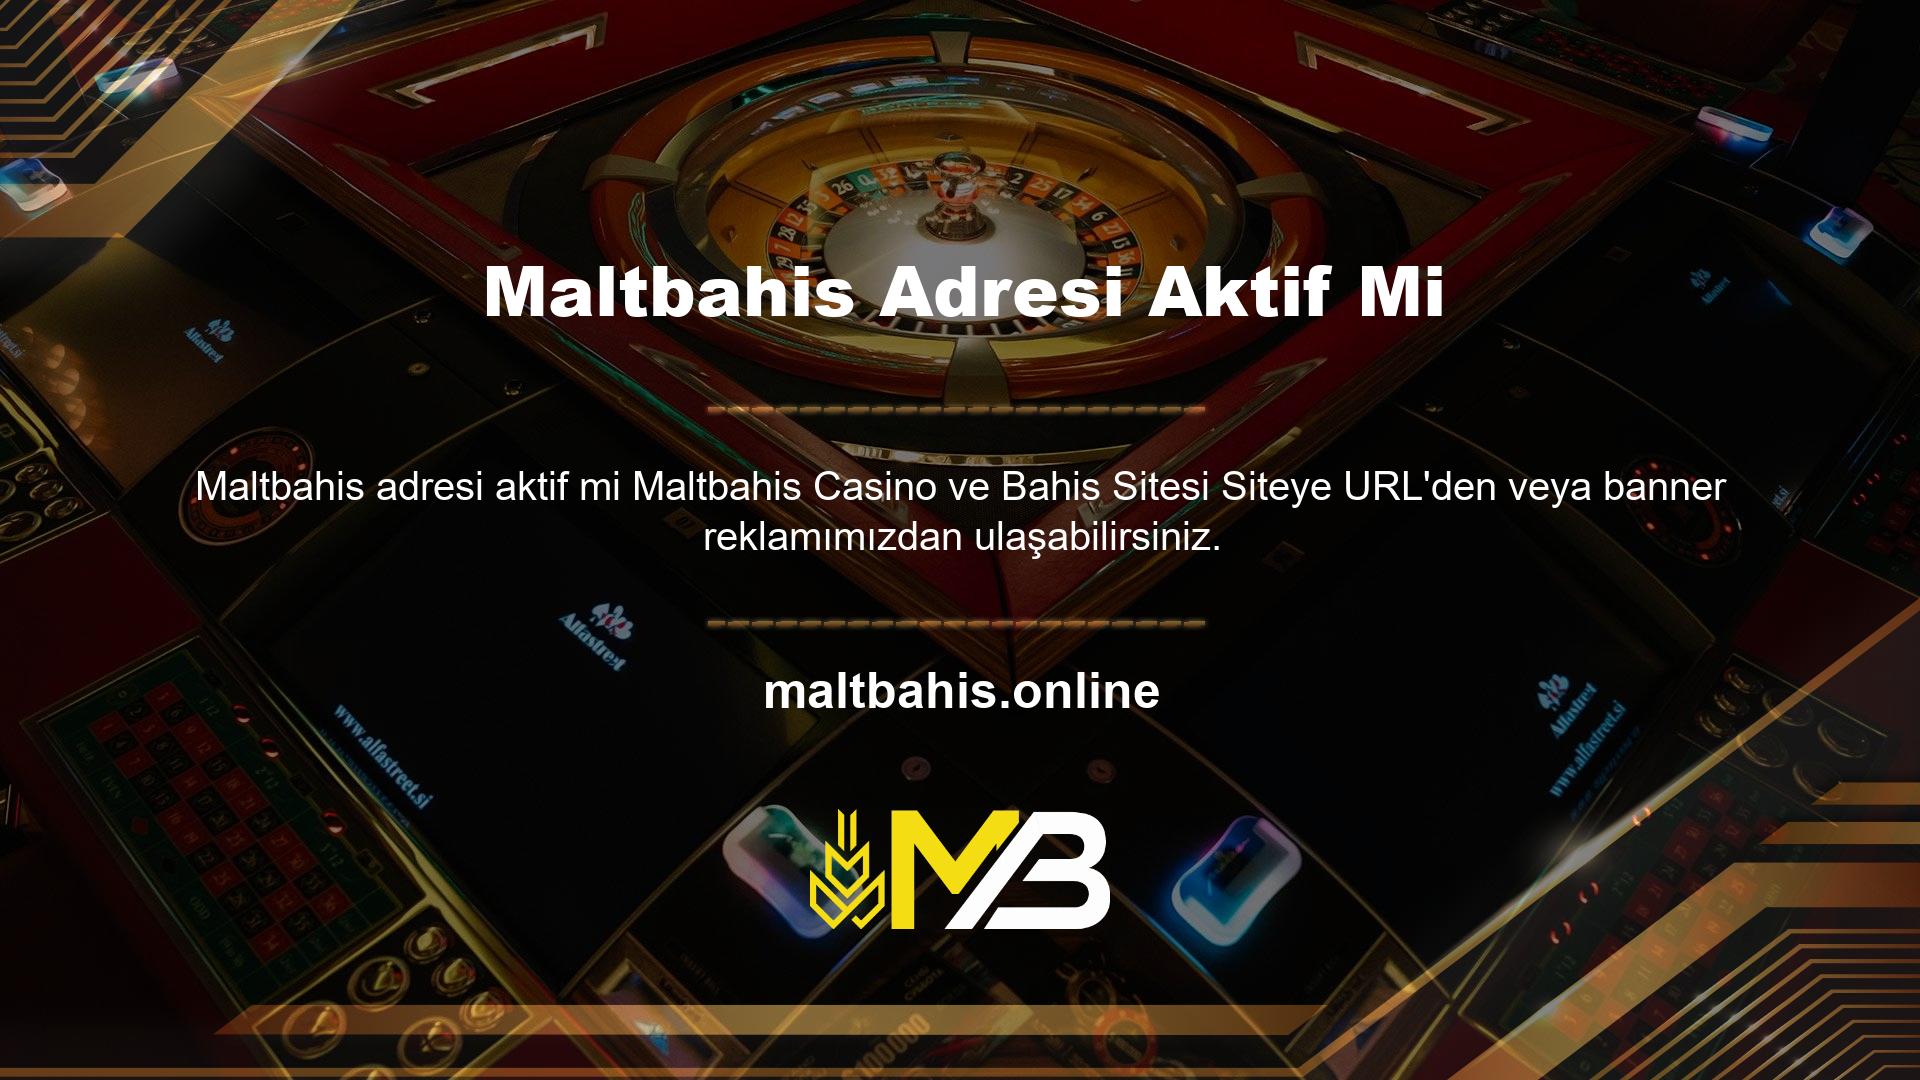 Yeni Maltbahis adresi aktif olur olmaz bu URL'yi güncelleyeceğiz